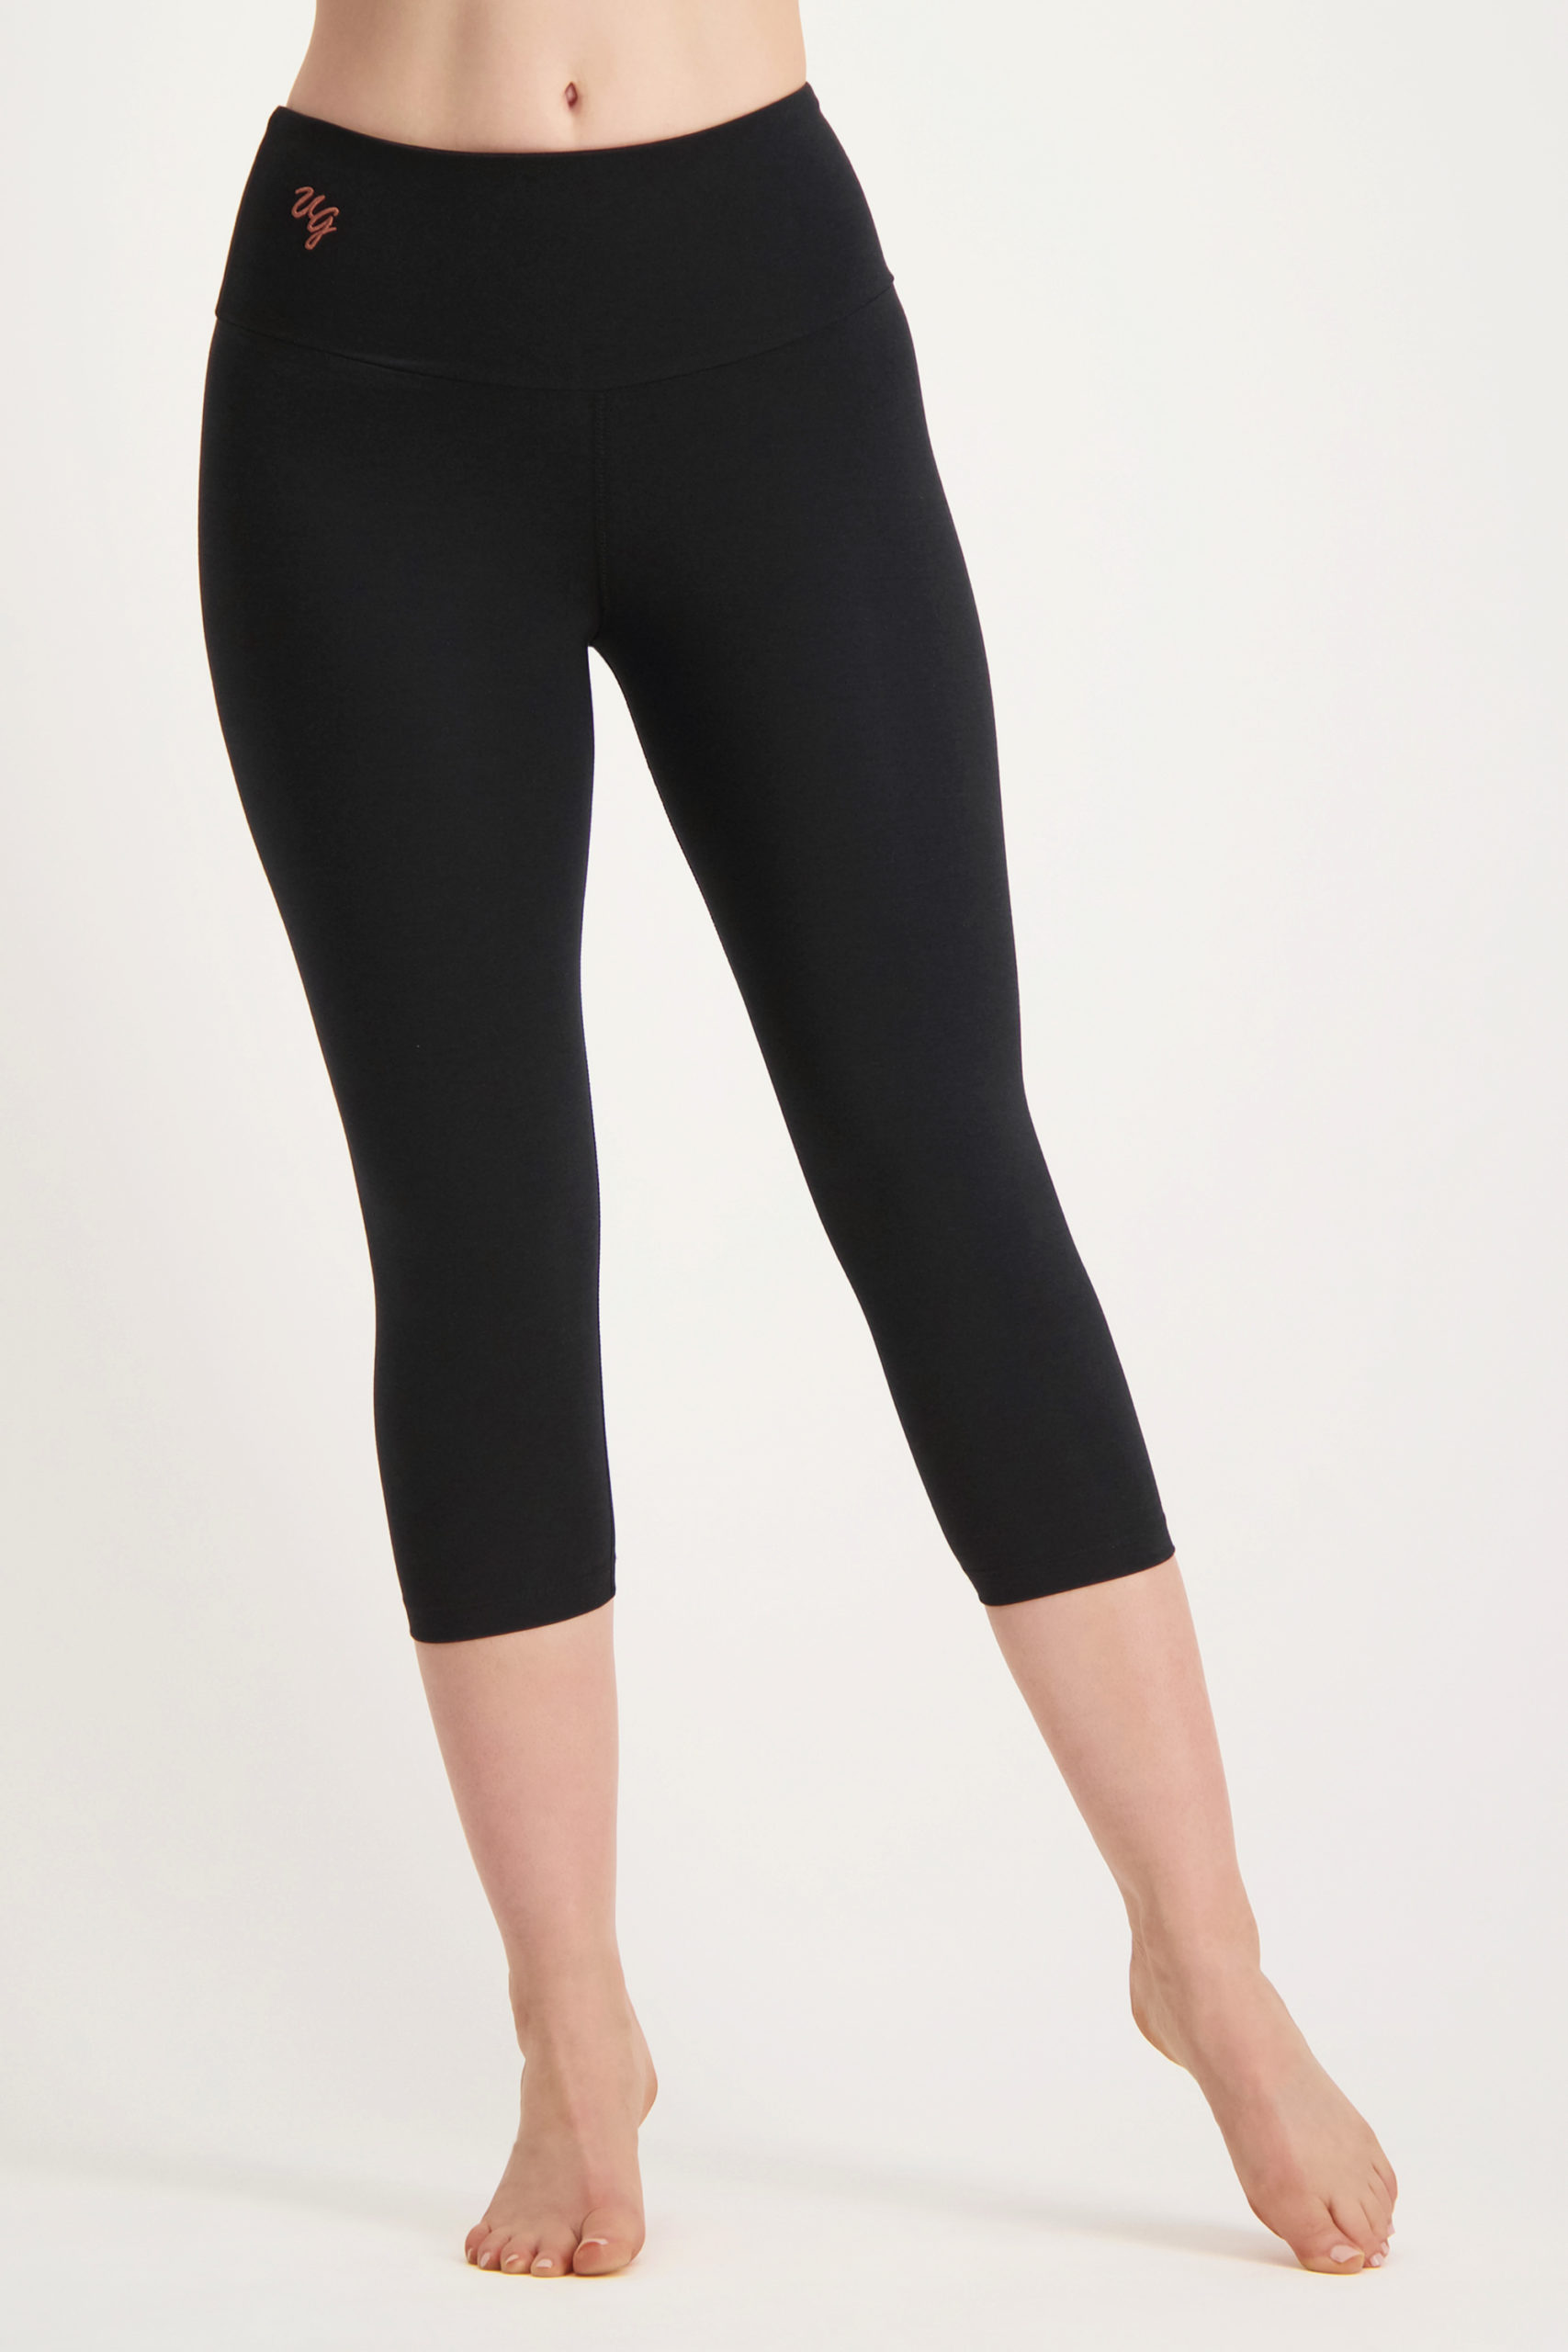 Satya capri leggings-urban black-13135501-front-model